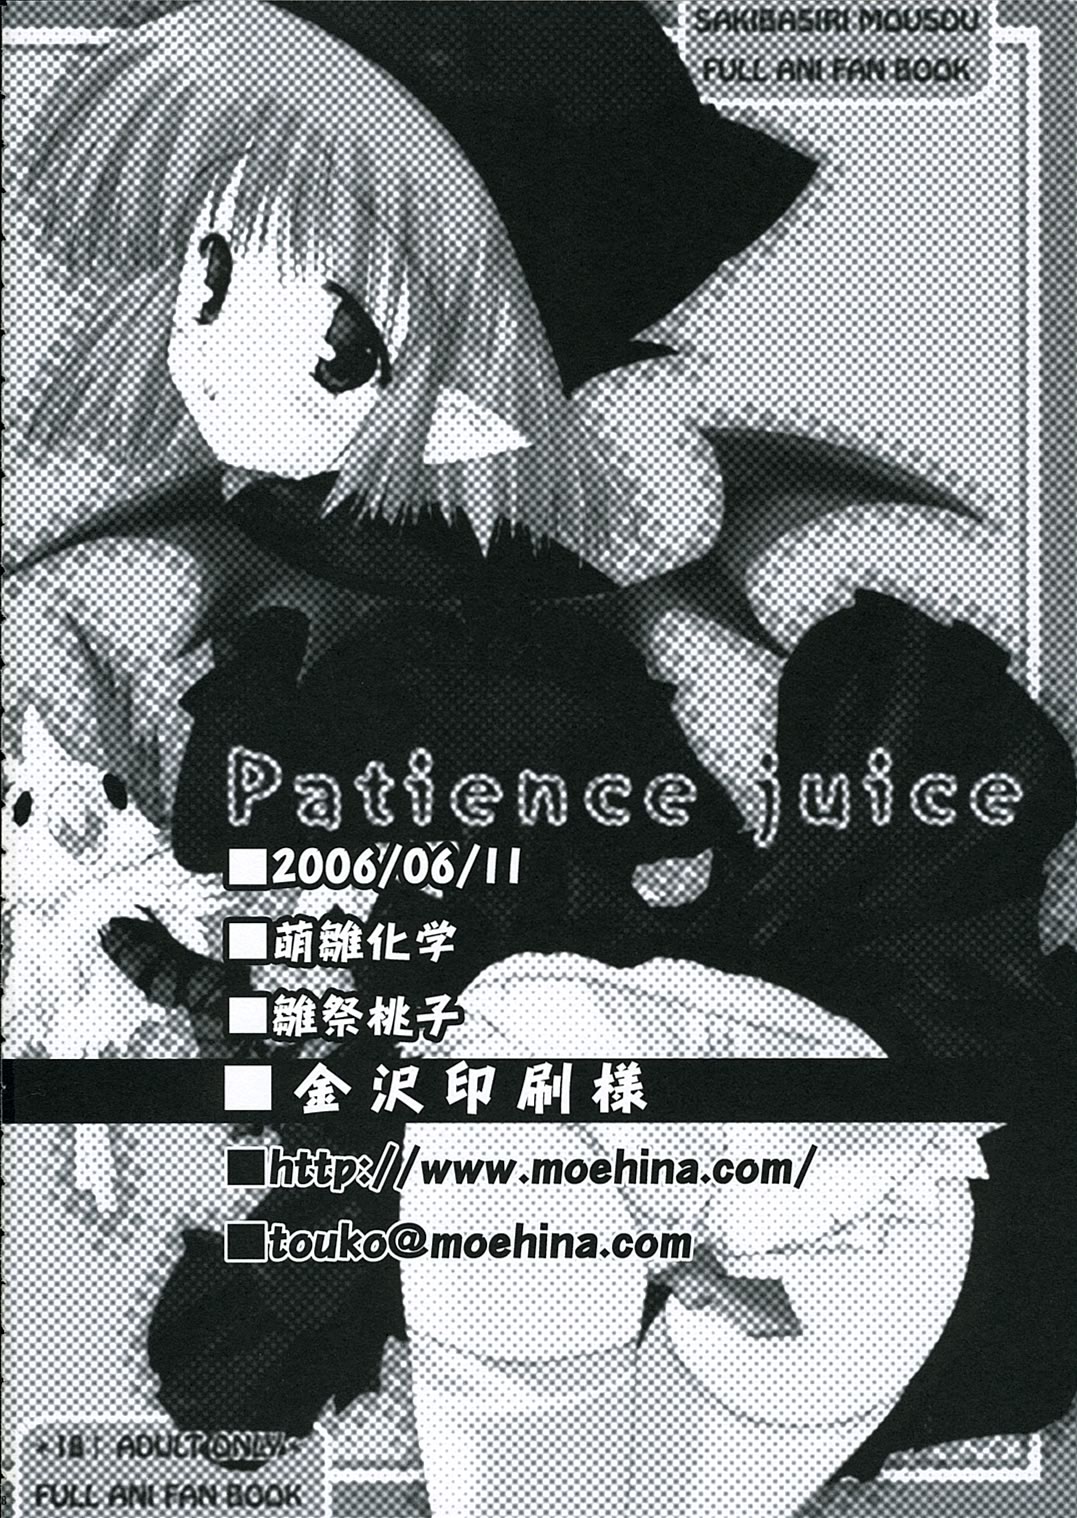 (コミコミ10) [萌雛化学 (雛祭桃子)] Patience juice (フルアニ)